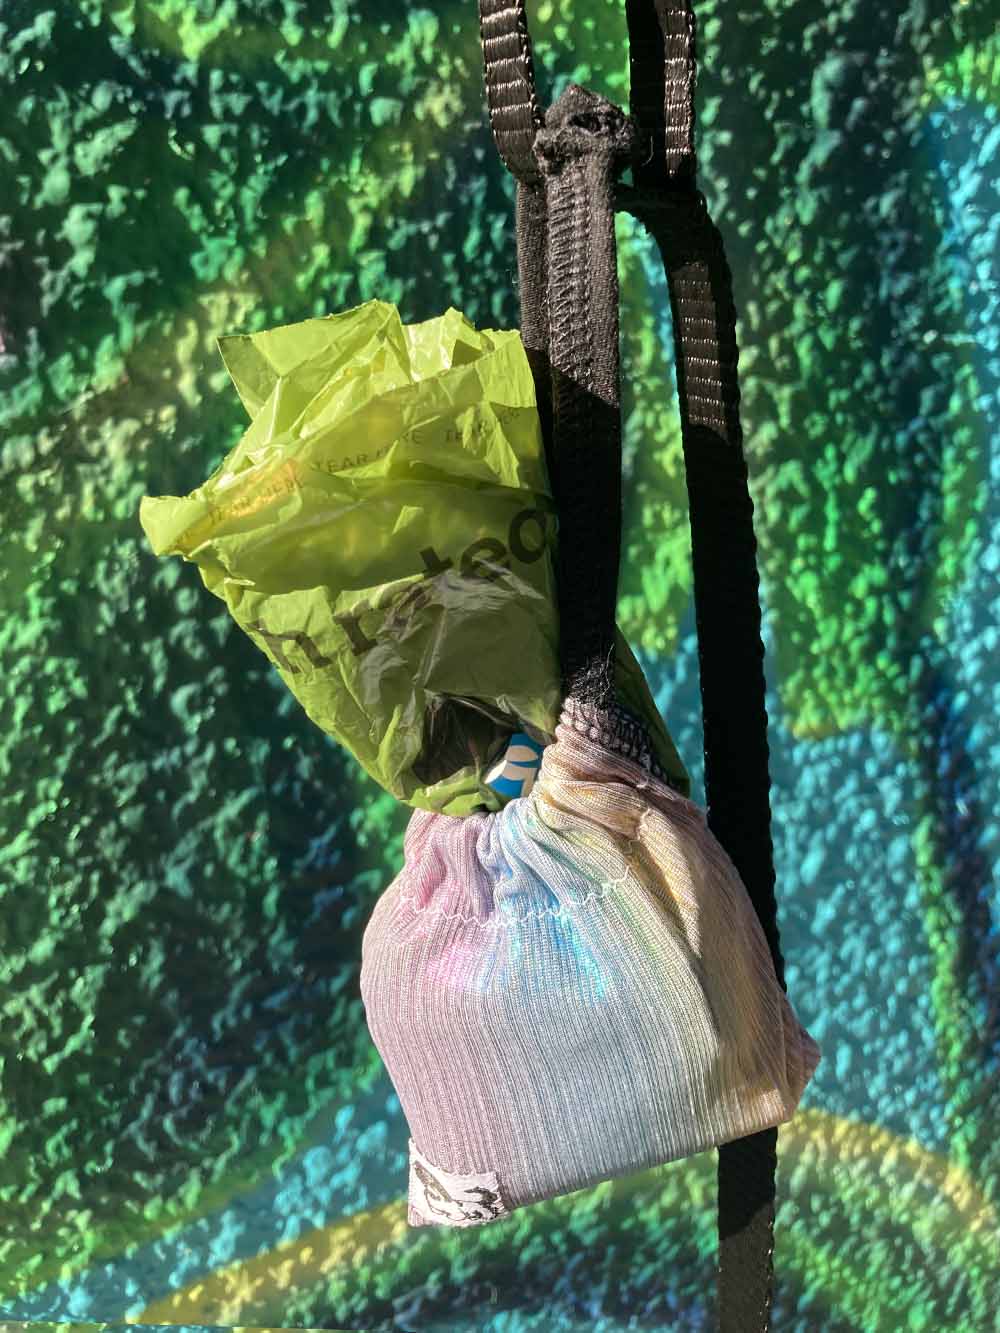 Cordelia Mini Poop Bag Dispenser